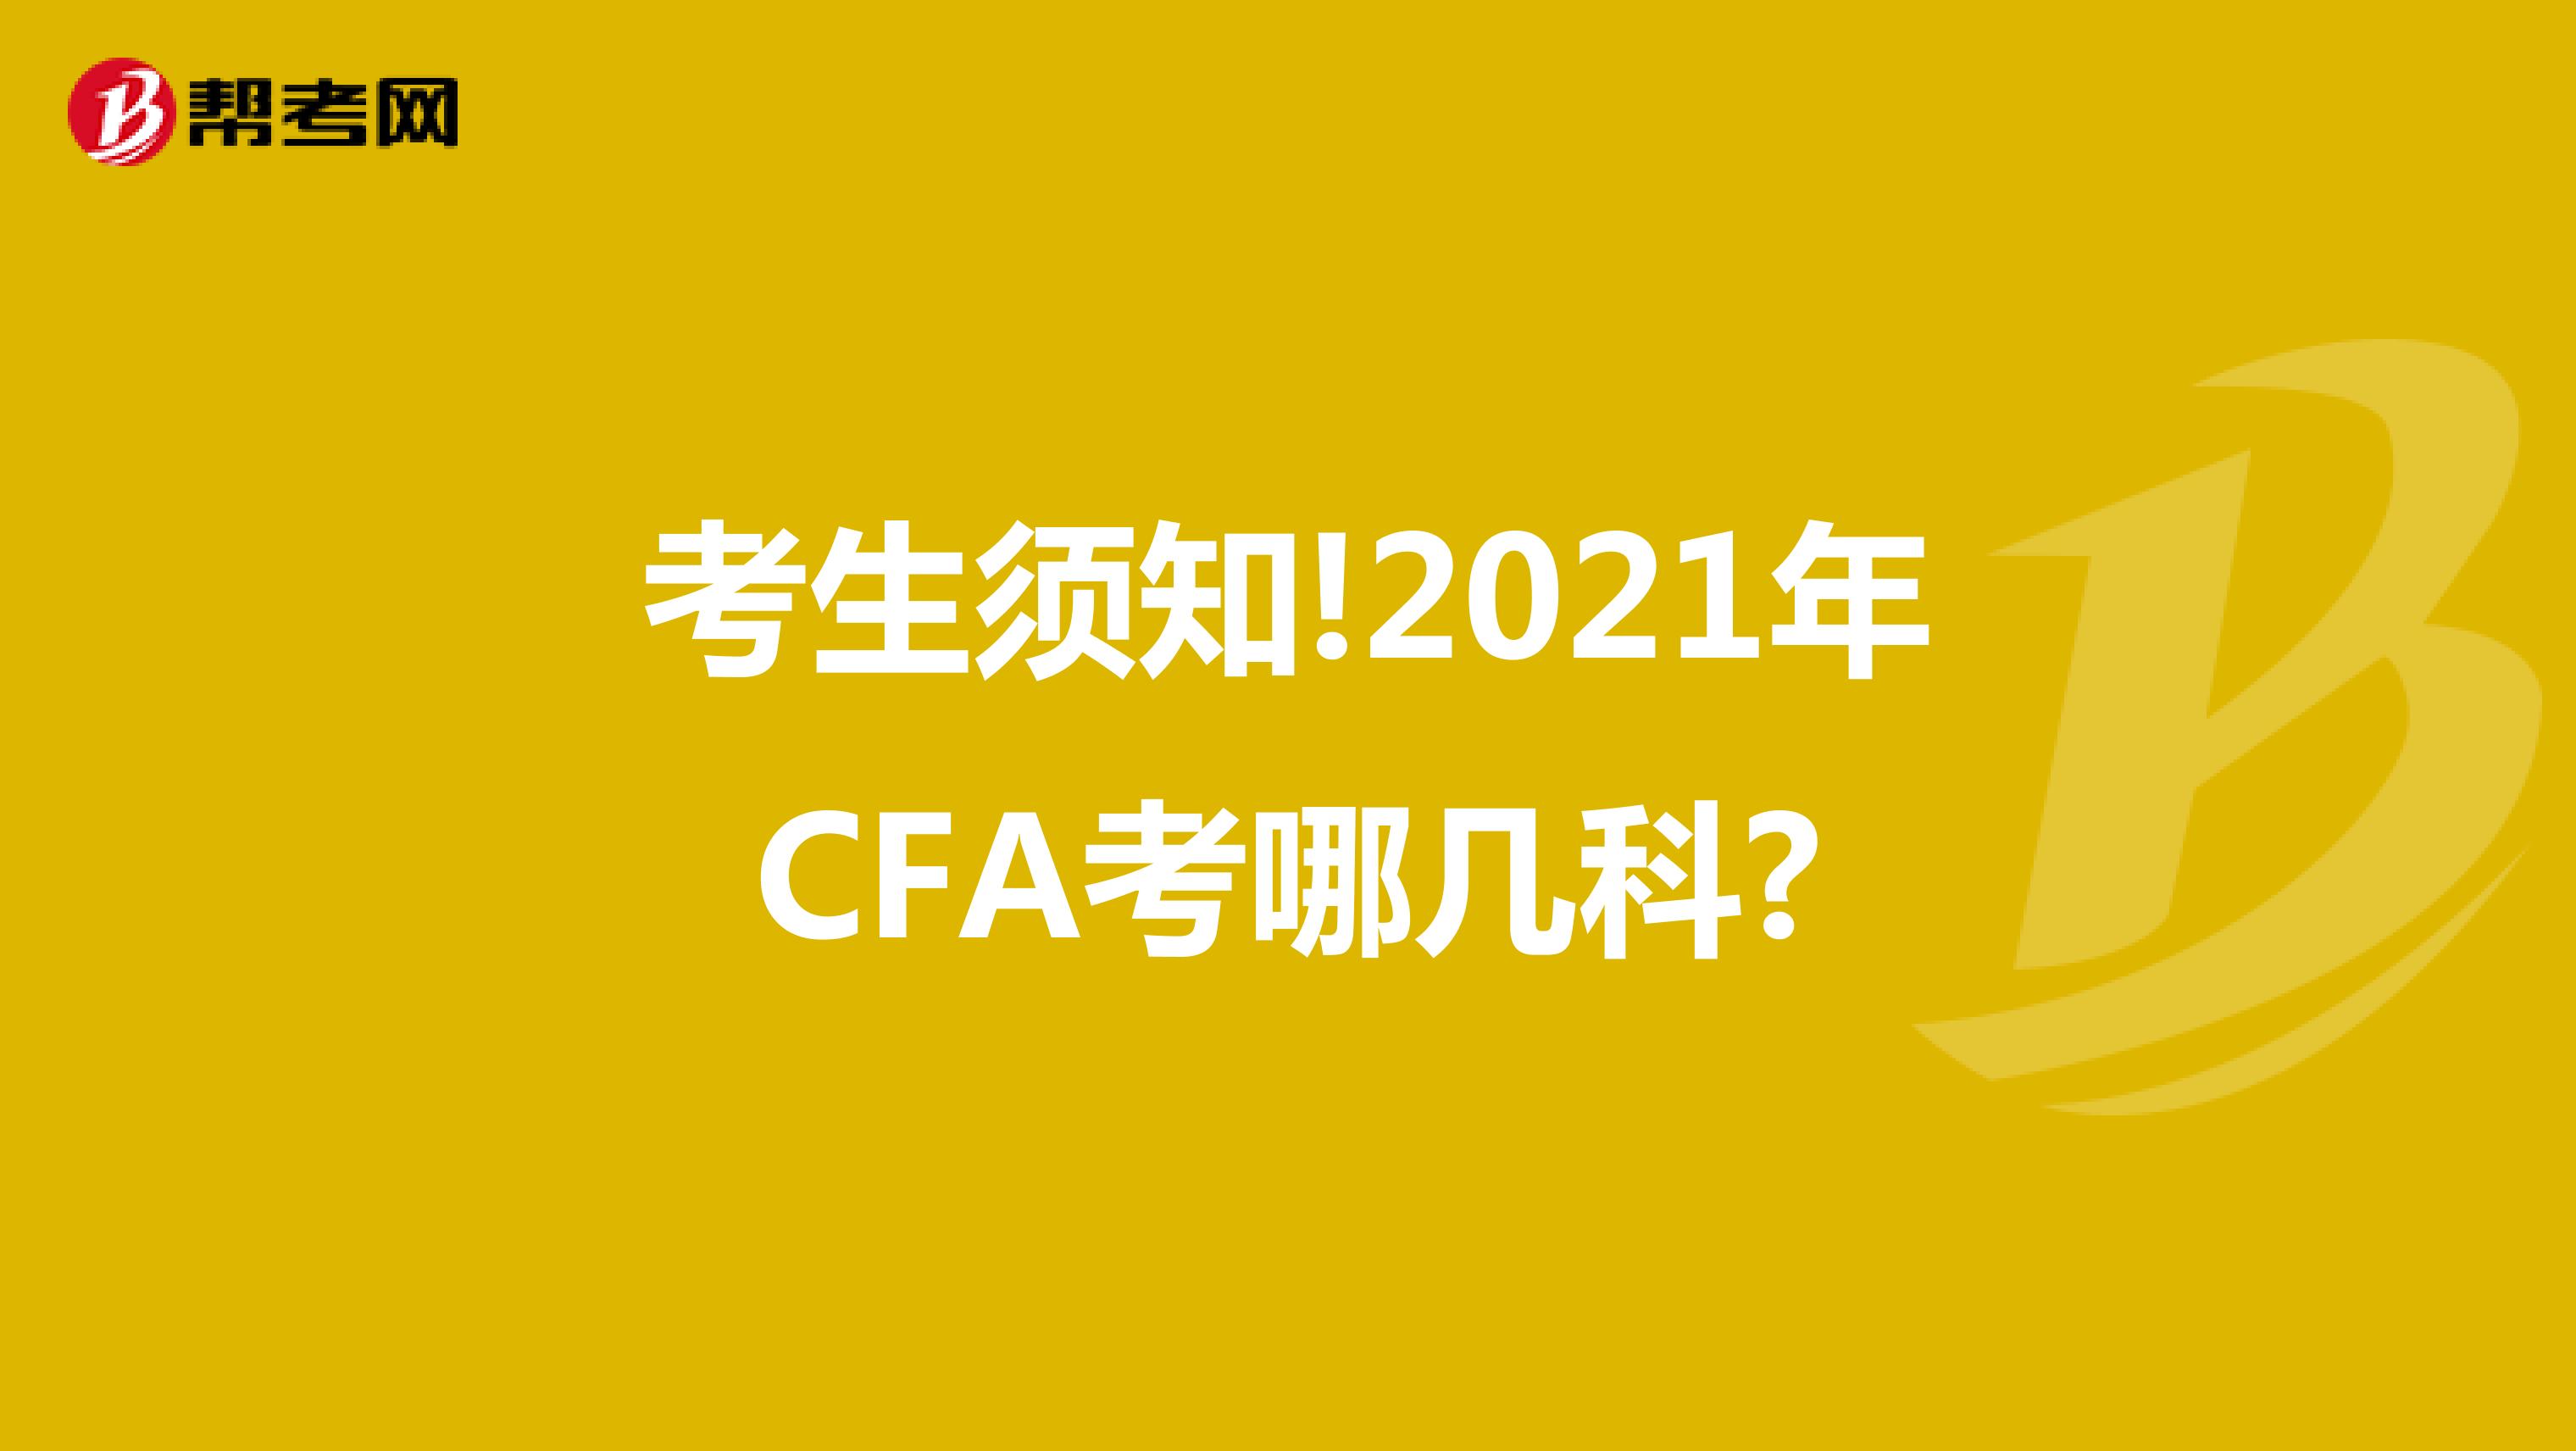 考生须知!2021年CFA考哪几科?